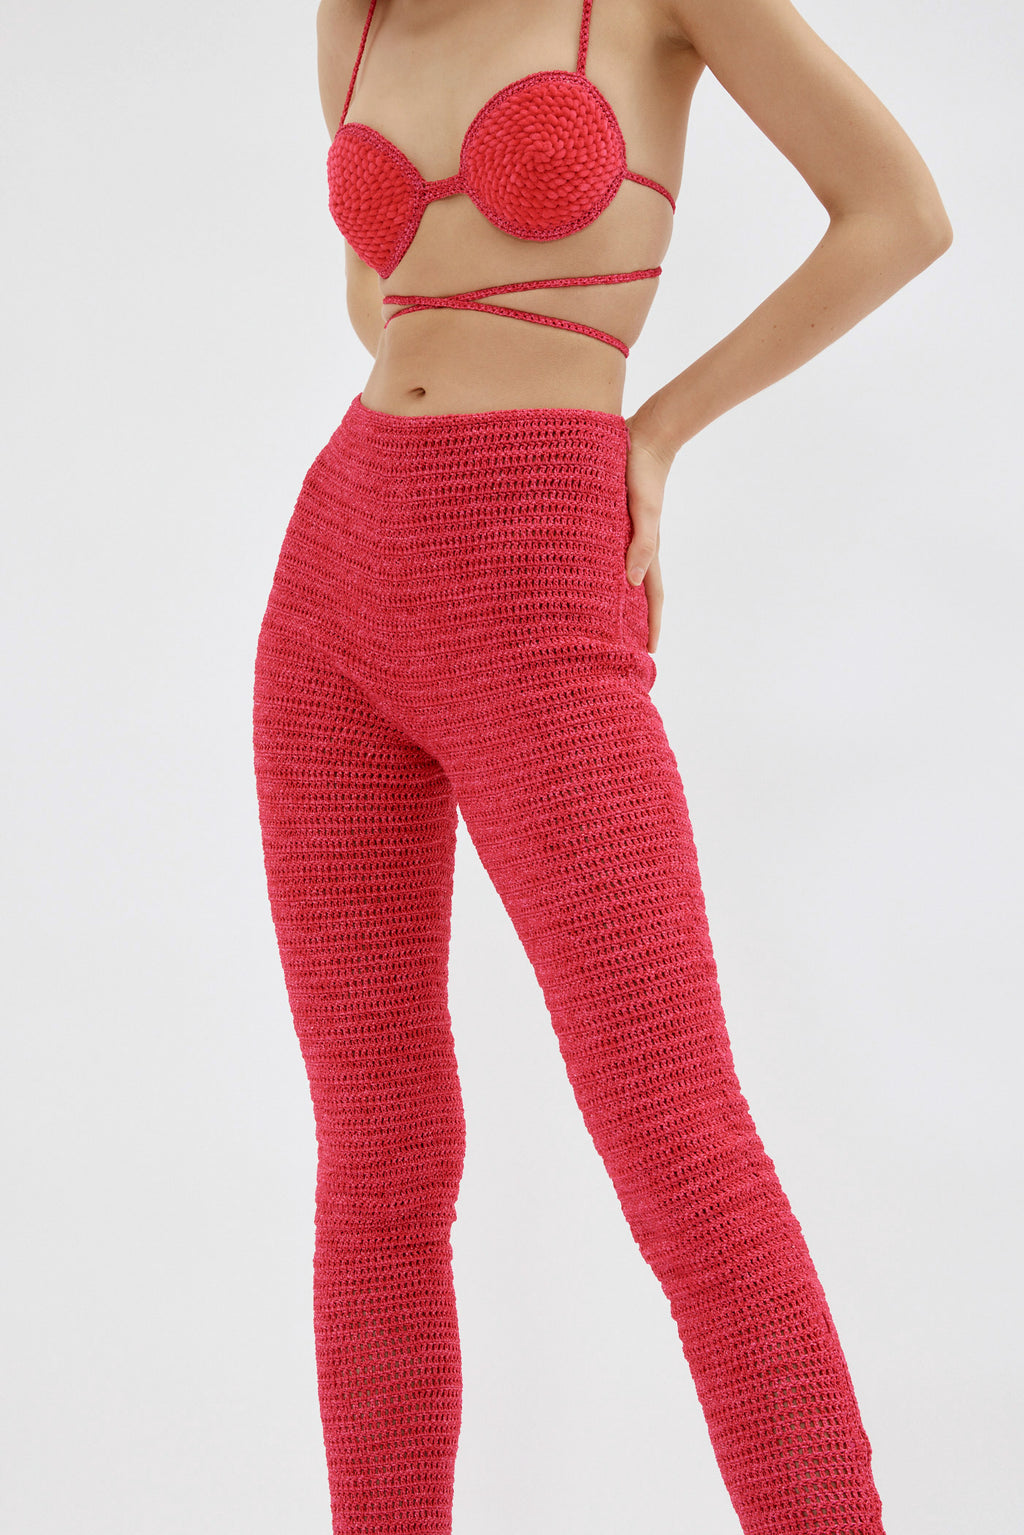 Crochet Fuchsia Strappy Bra Top